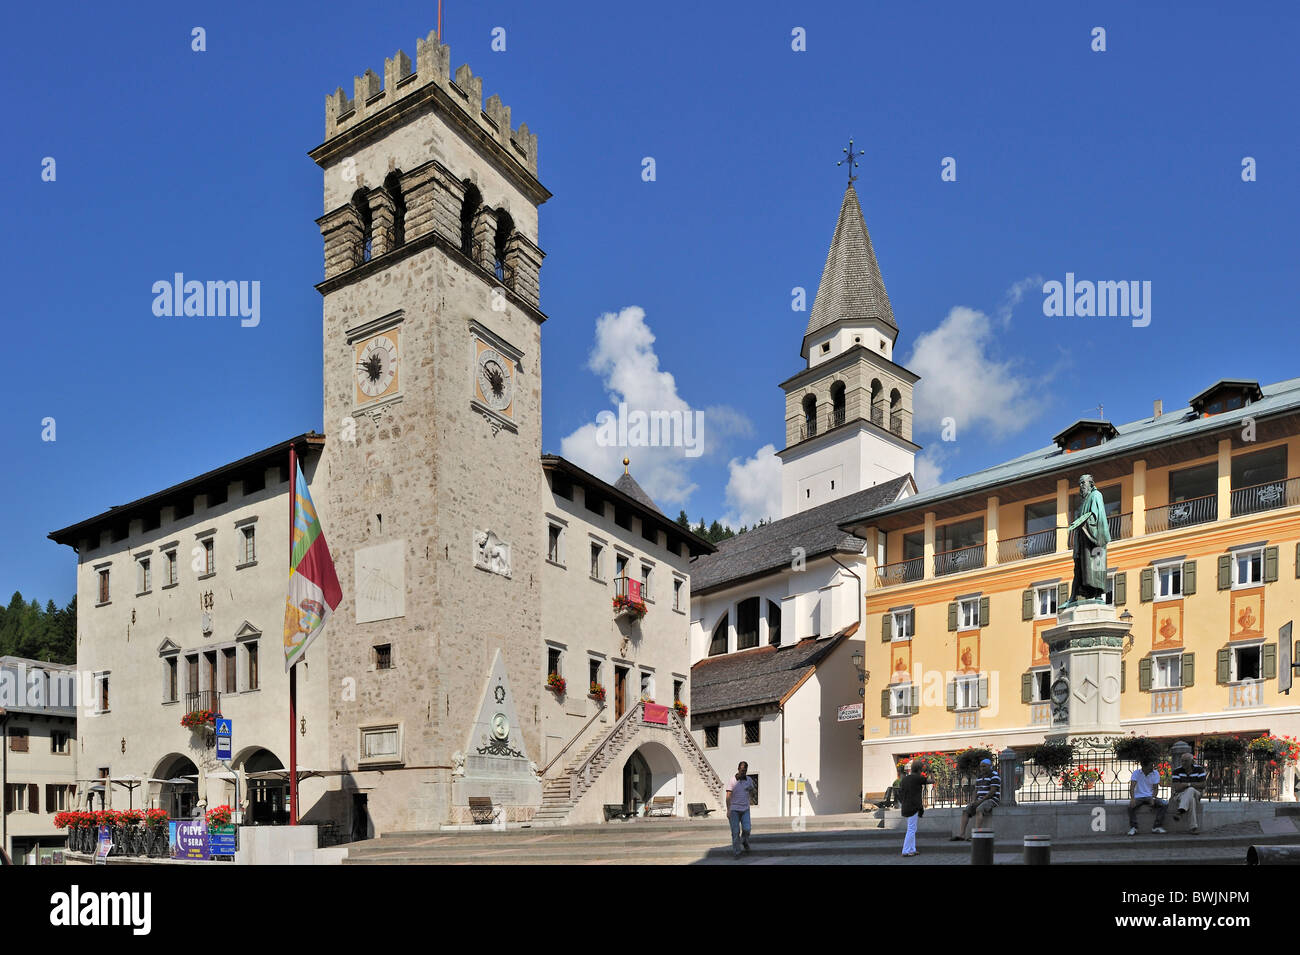 Platz mit der Statue des Malers Tizian / Tiziano Vecelli / Tiziano Vecellio in Pieve di Cadore, Dolomiten, Italien Stockfoto